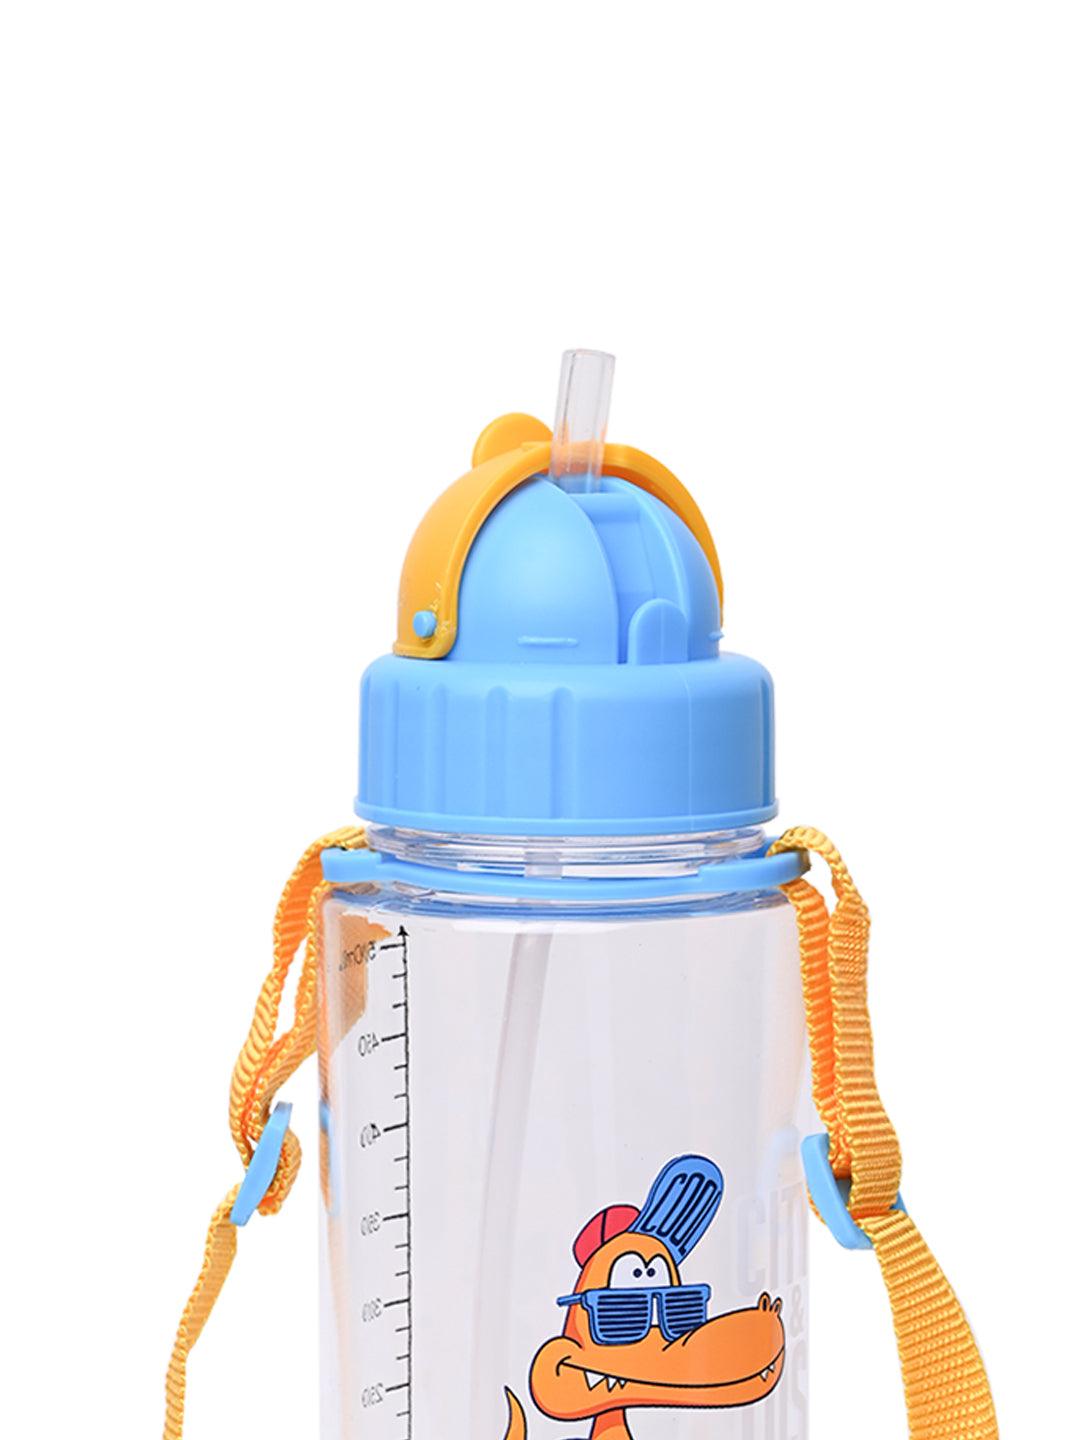 500mL Sipper Bottle For Kids - Light Blue - MARKET 99